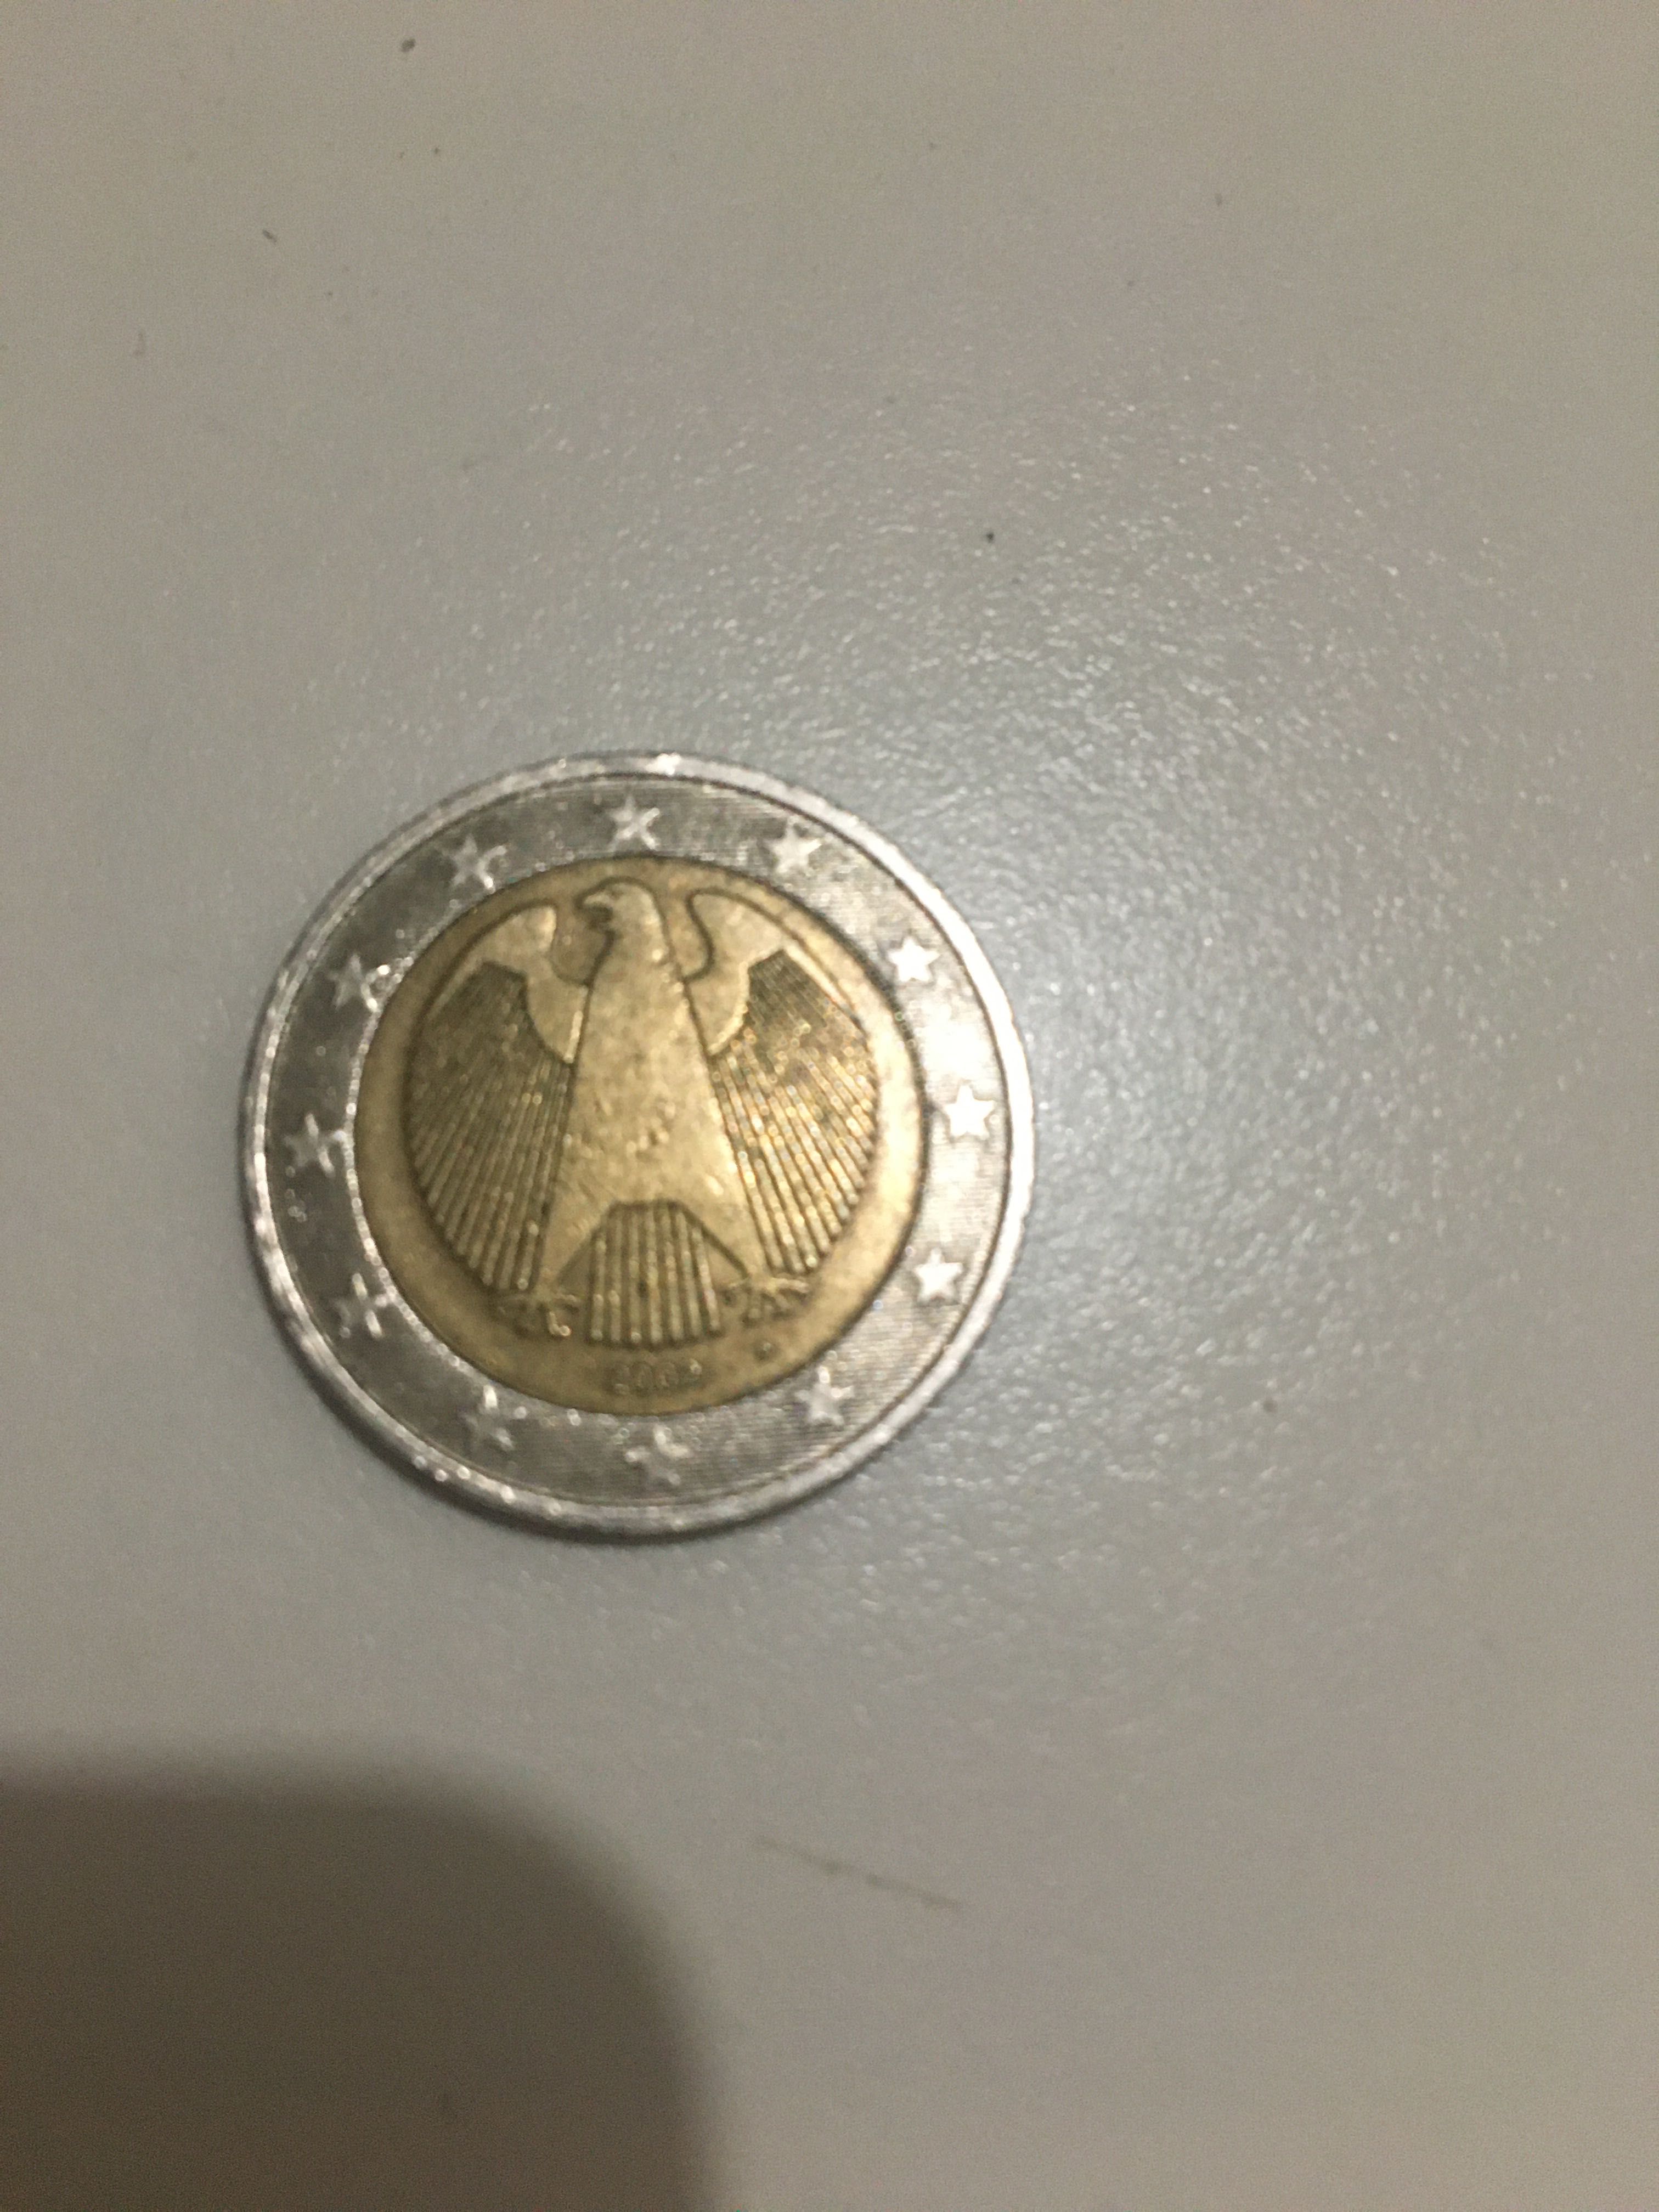 Moeda €2 euros comemorativa de 2002 Duitsland